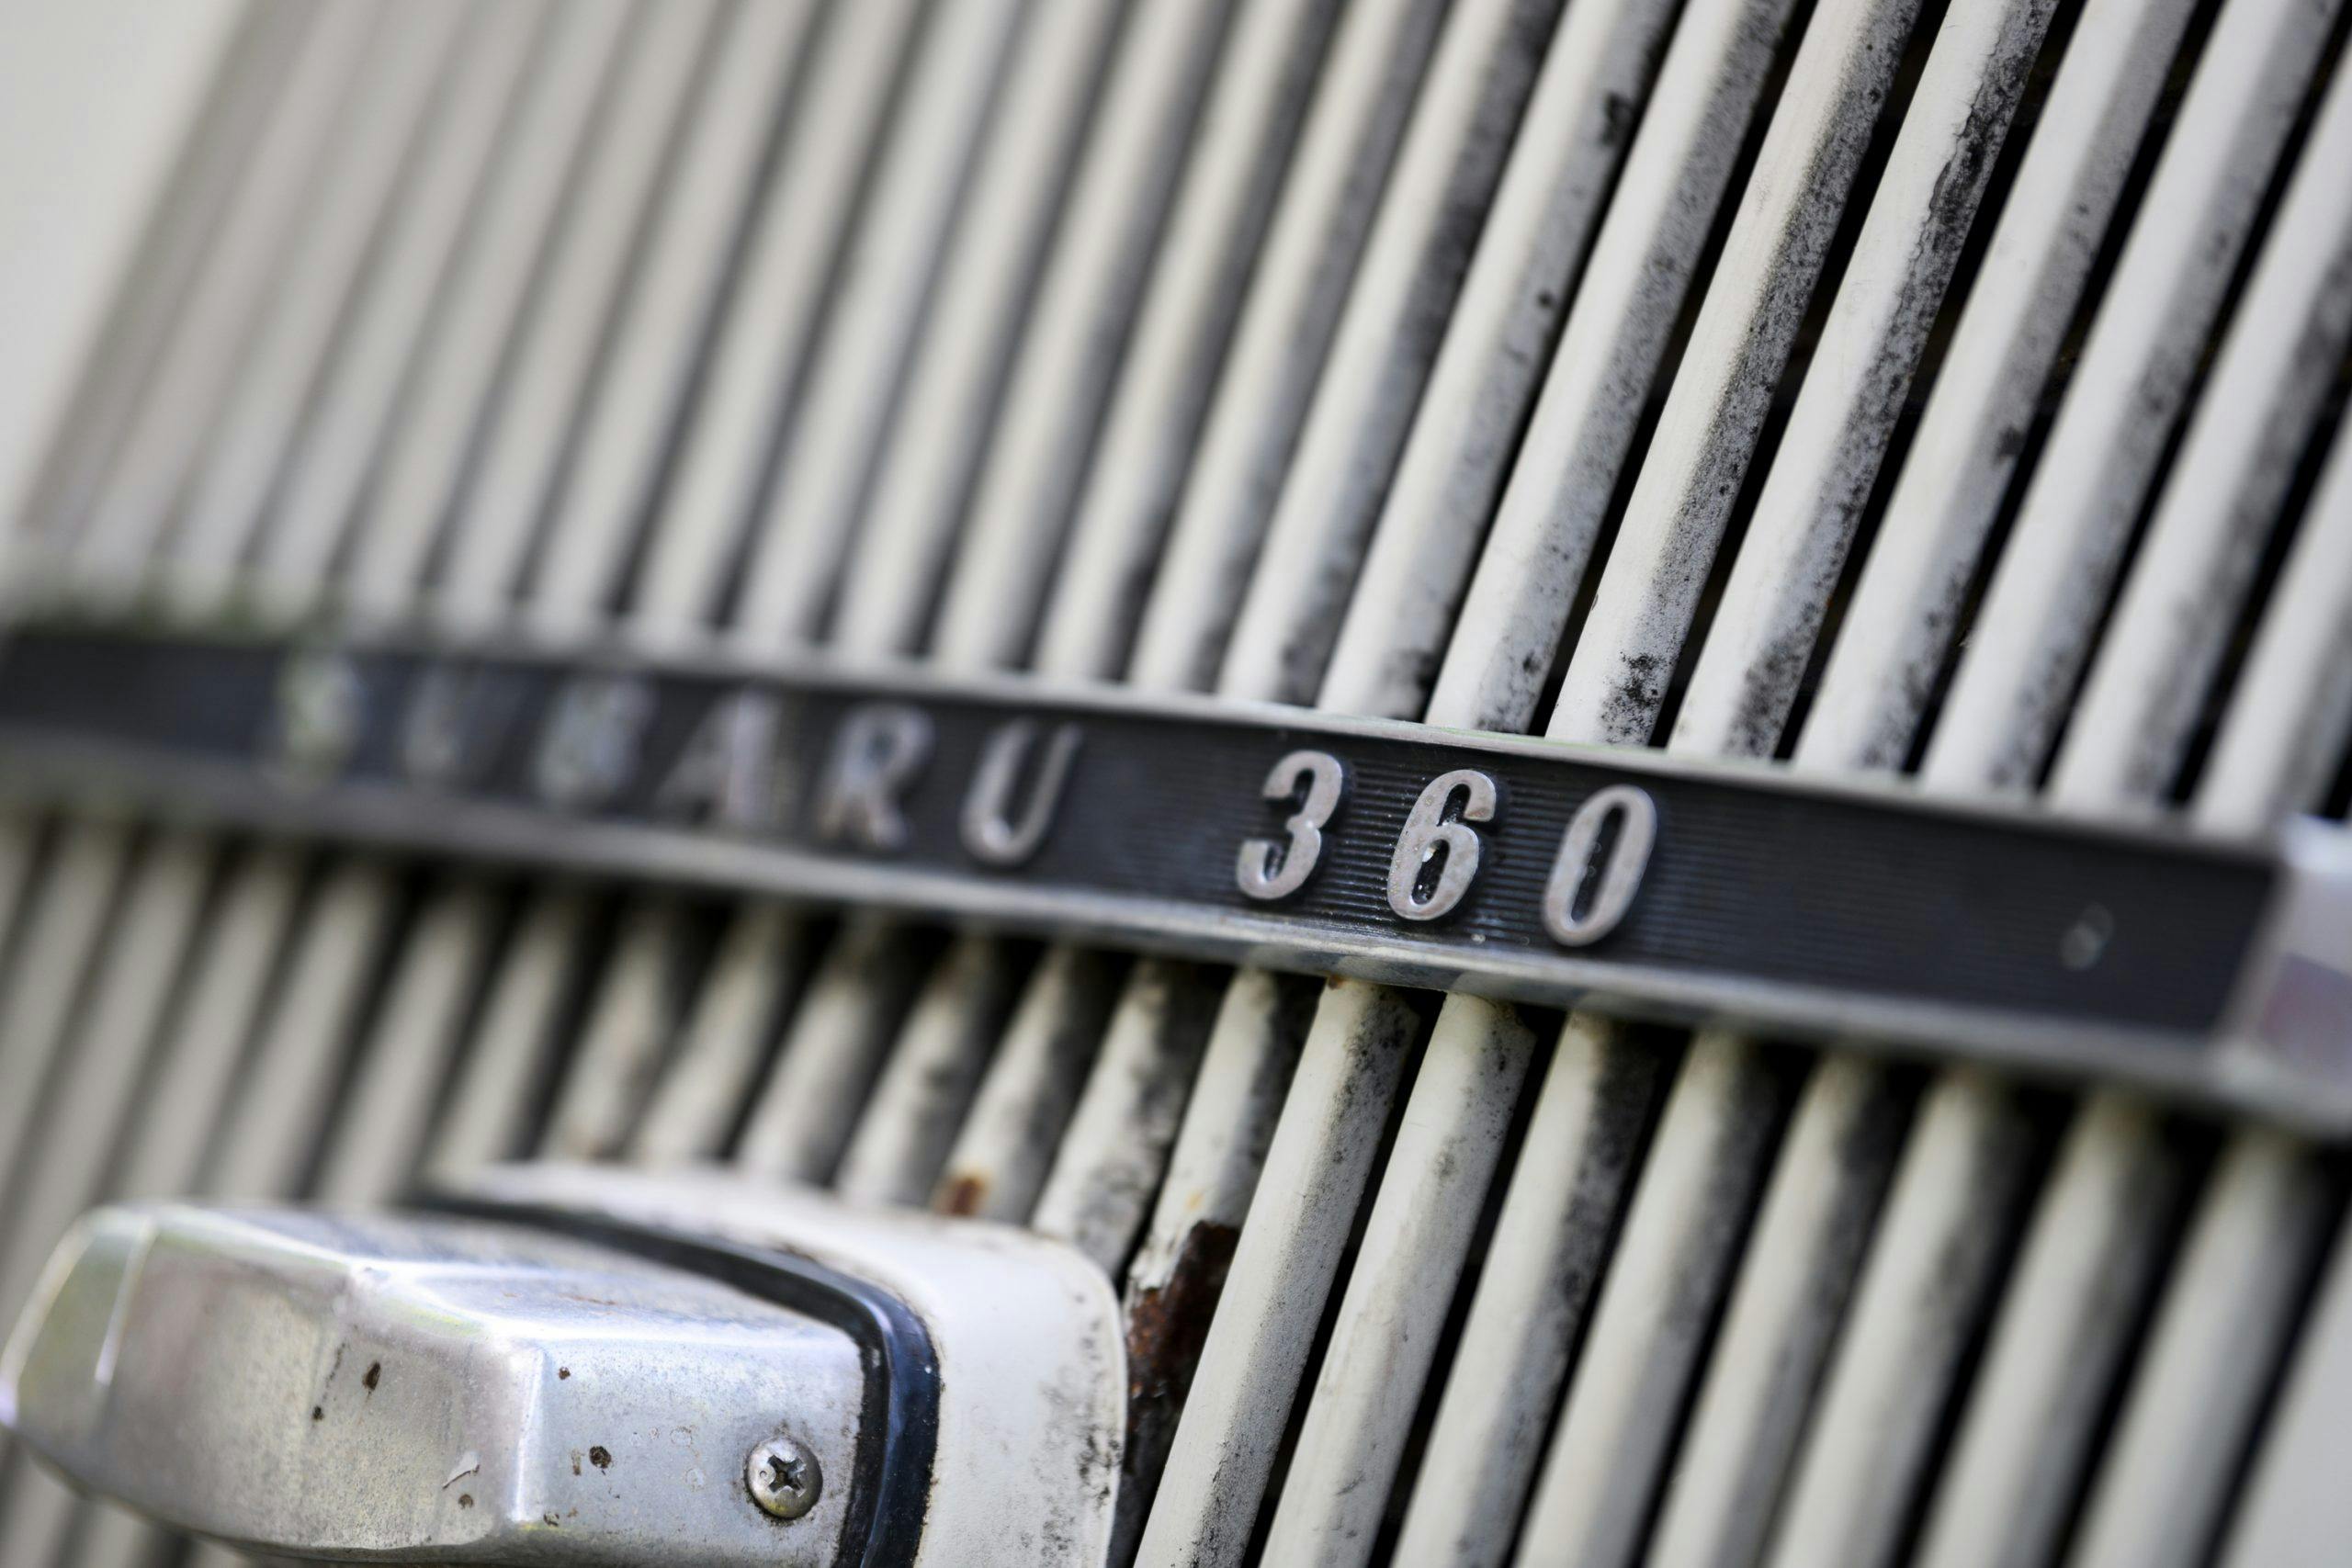 Subaru 360 badge detail